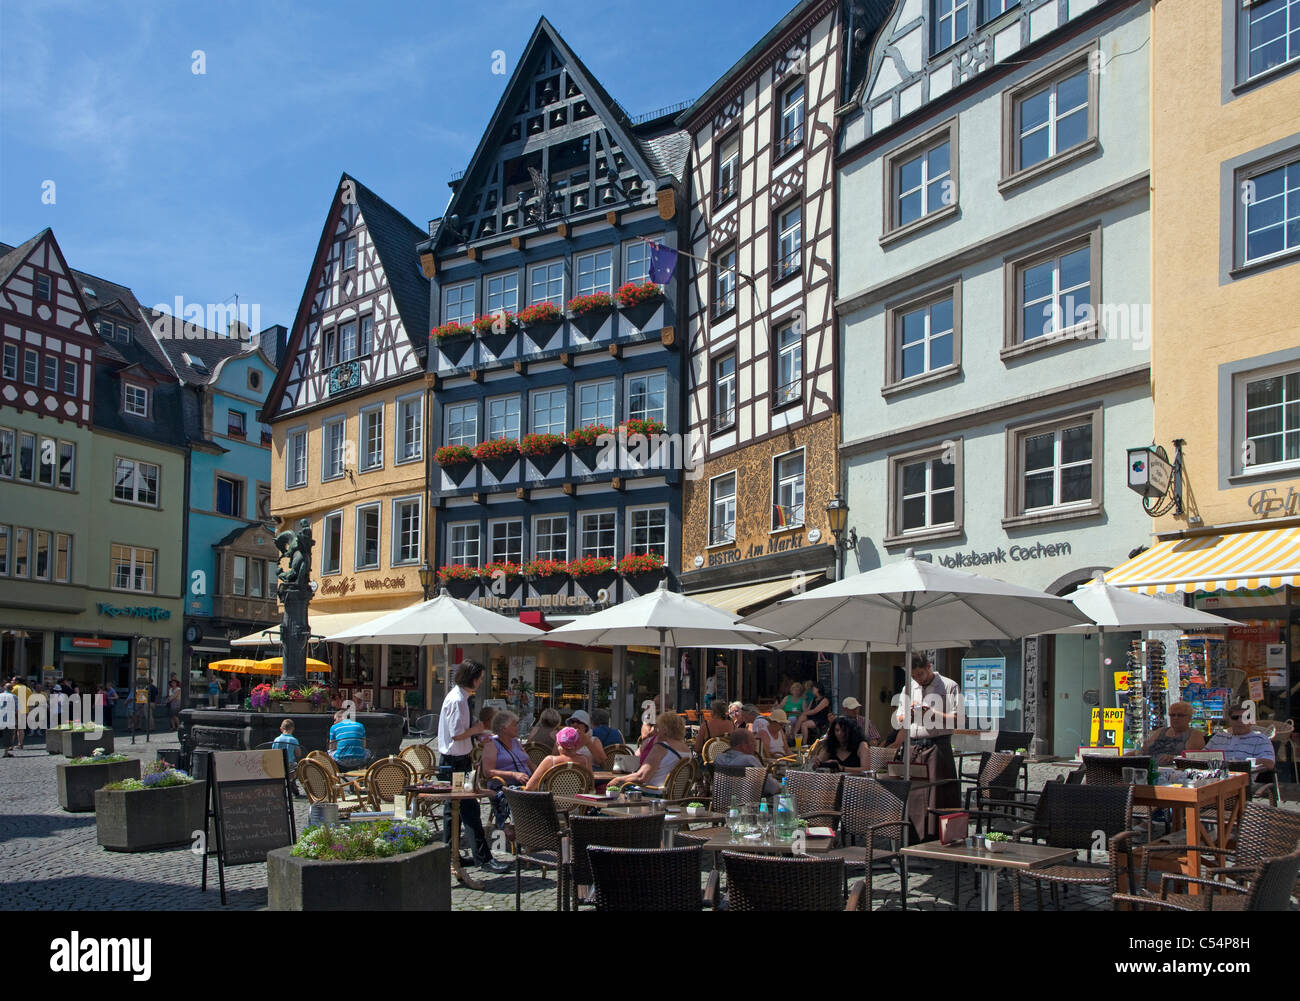 Strassencafe auf dem Marktplatz, historischer Stadtkern, Cochem, Mittelmosel, Street coffee shop at the market place, old town Stock Photo